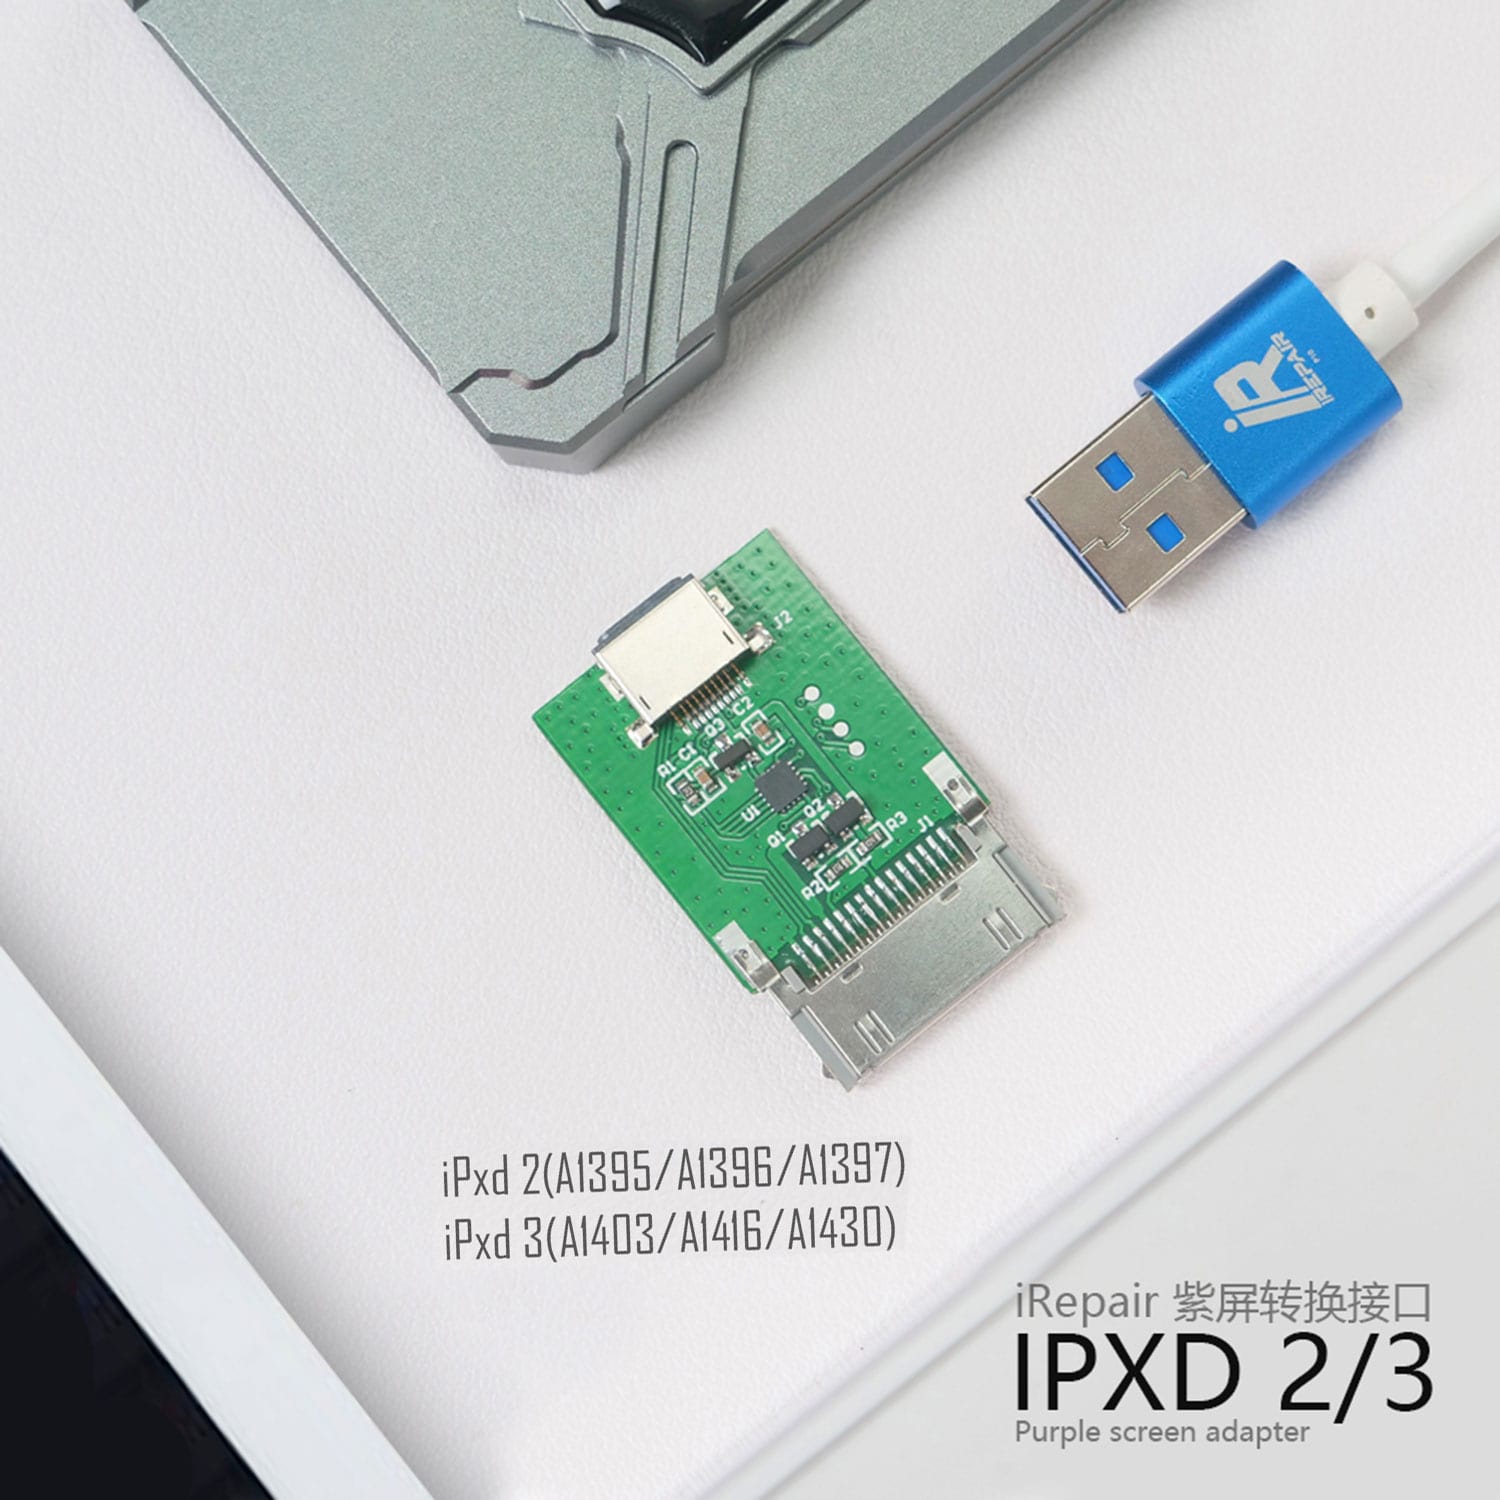 IPXD 2/3 ADAPTER FOR IREPAIR P10 DFU BOX